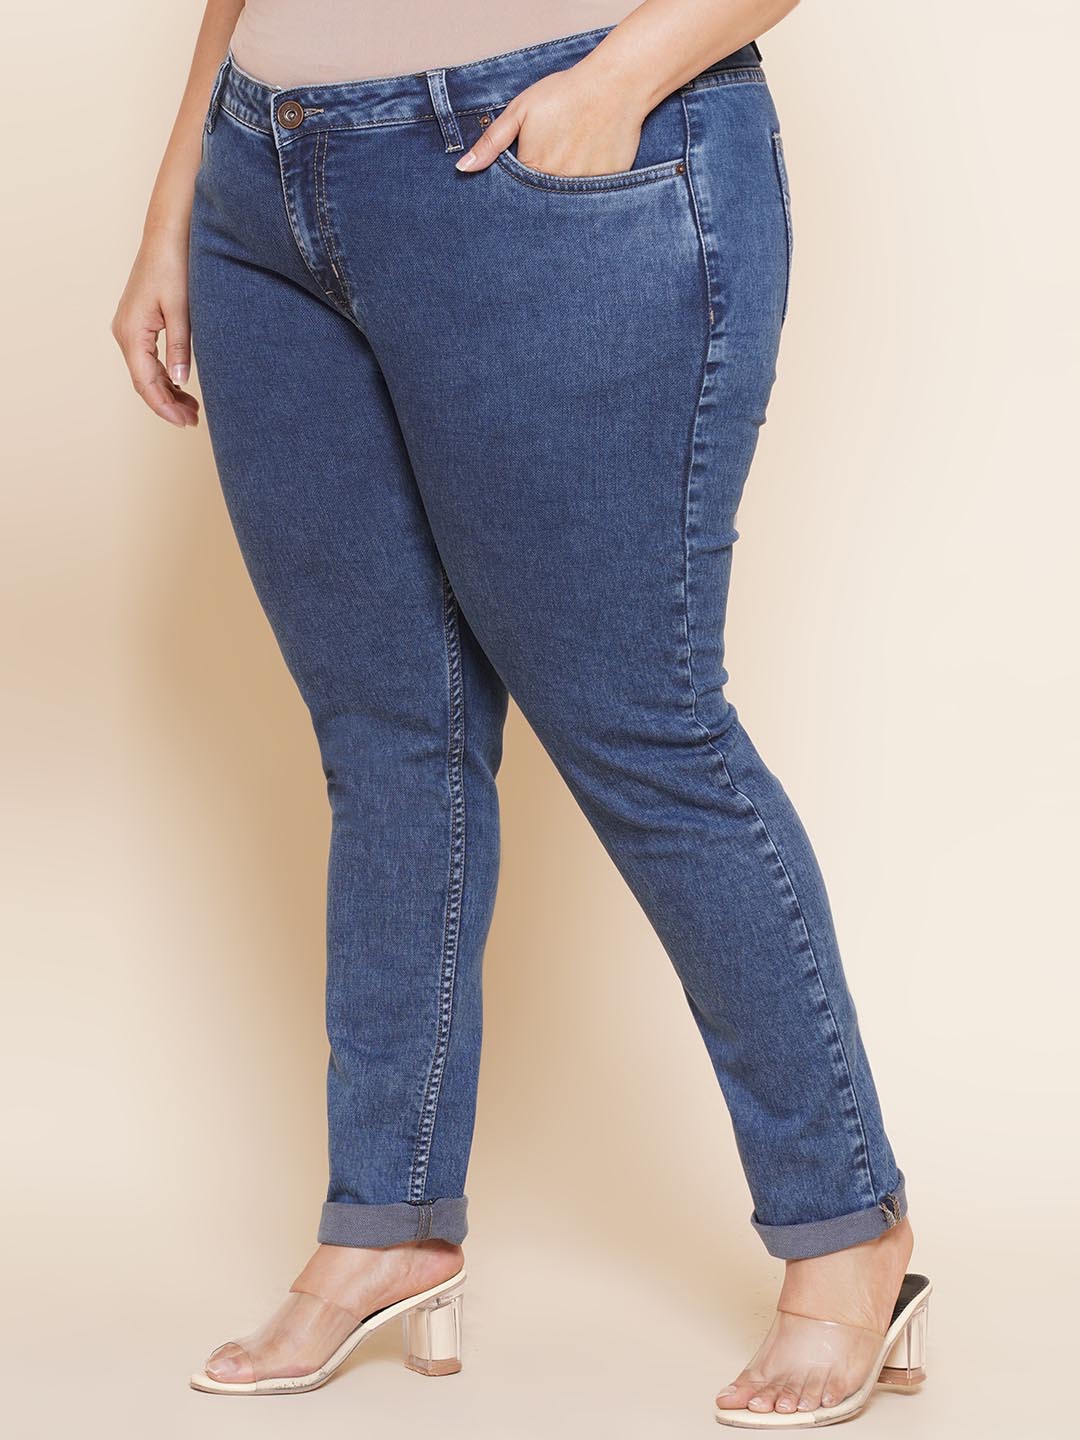 bottomwear_kiaahvi/jeans/KIJ6009/kij6009-4.jpg